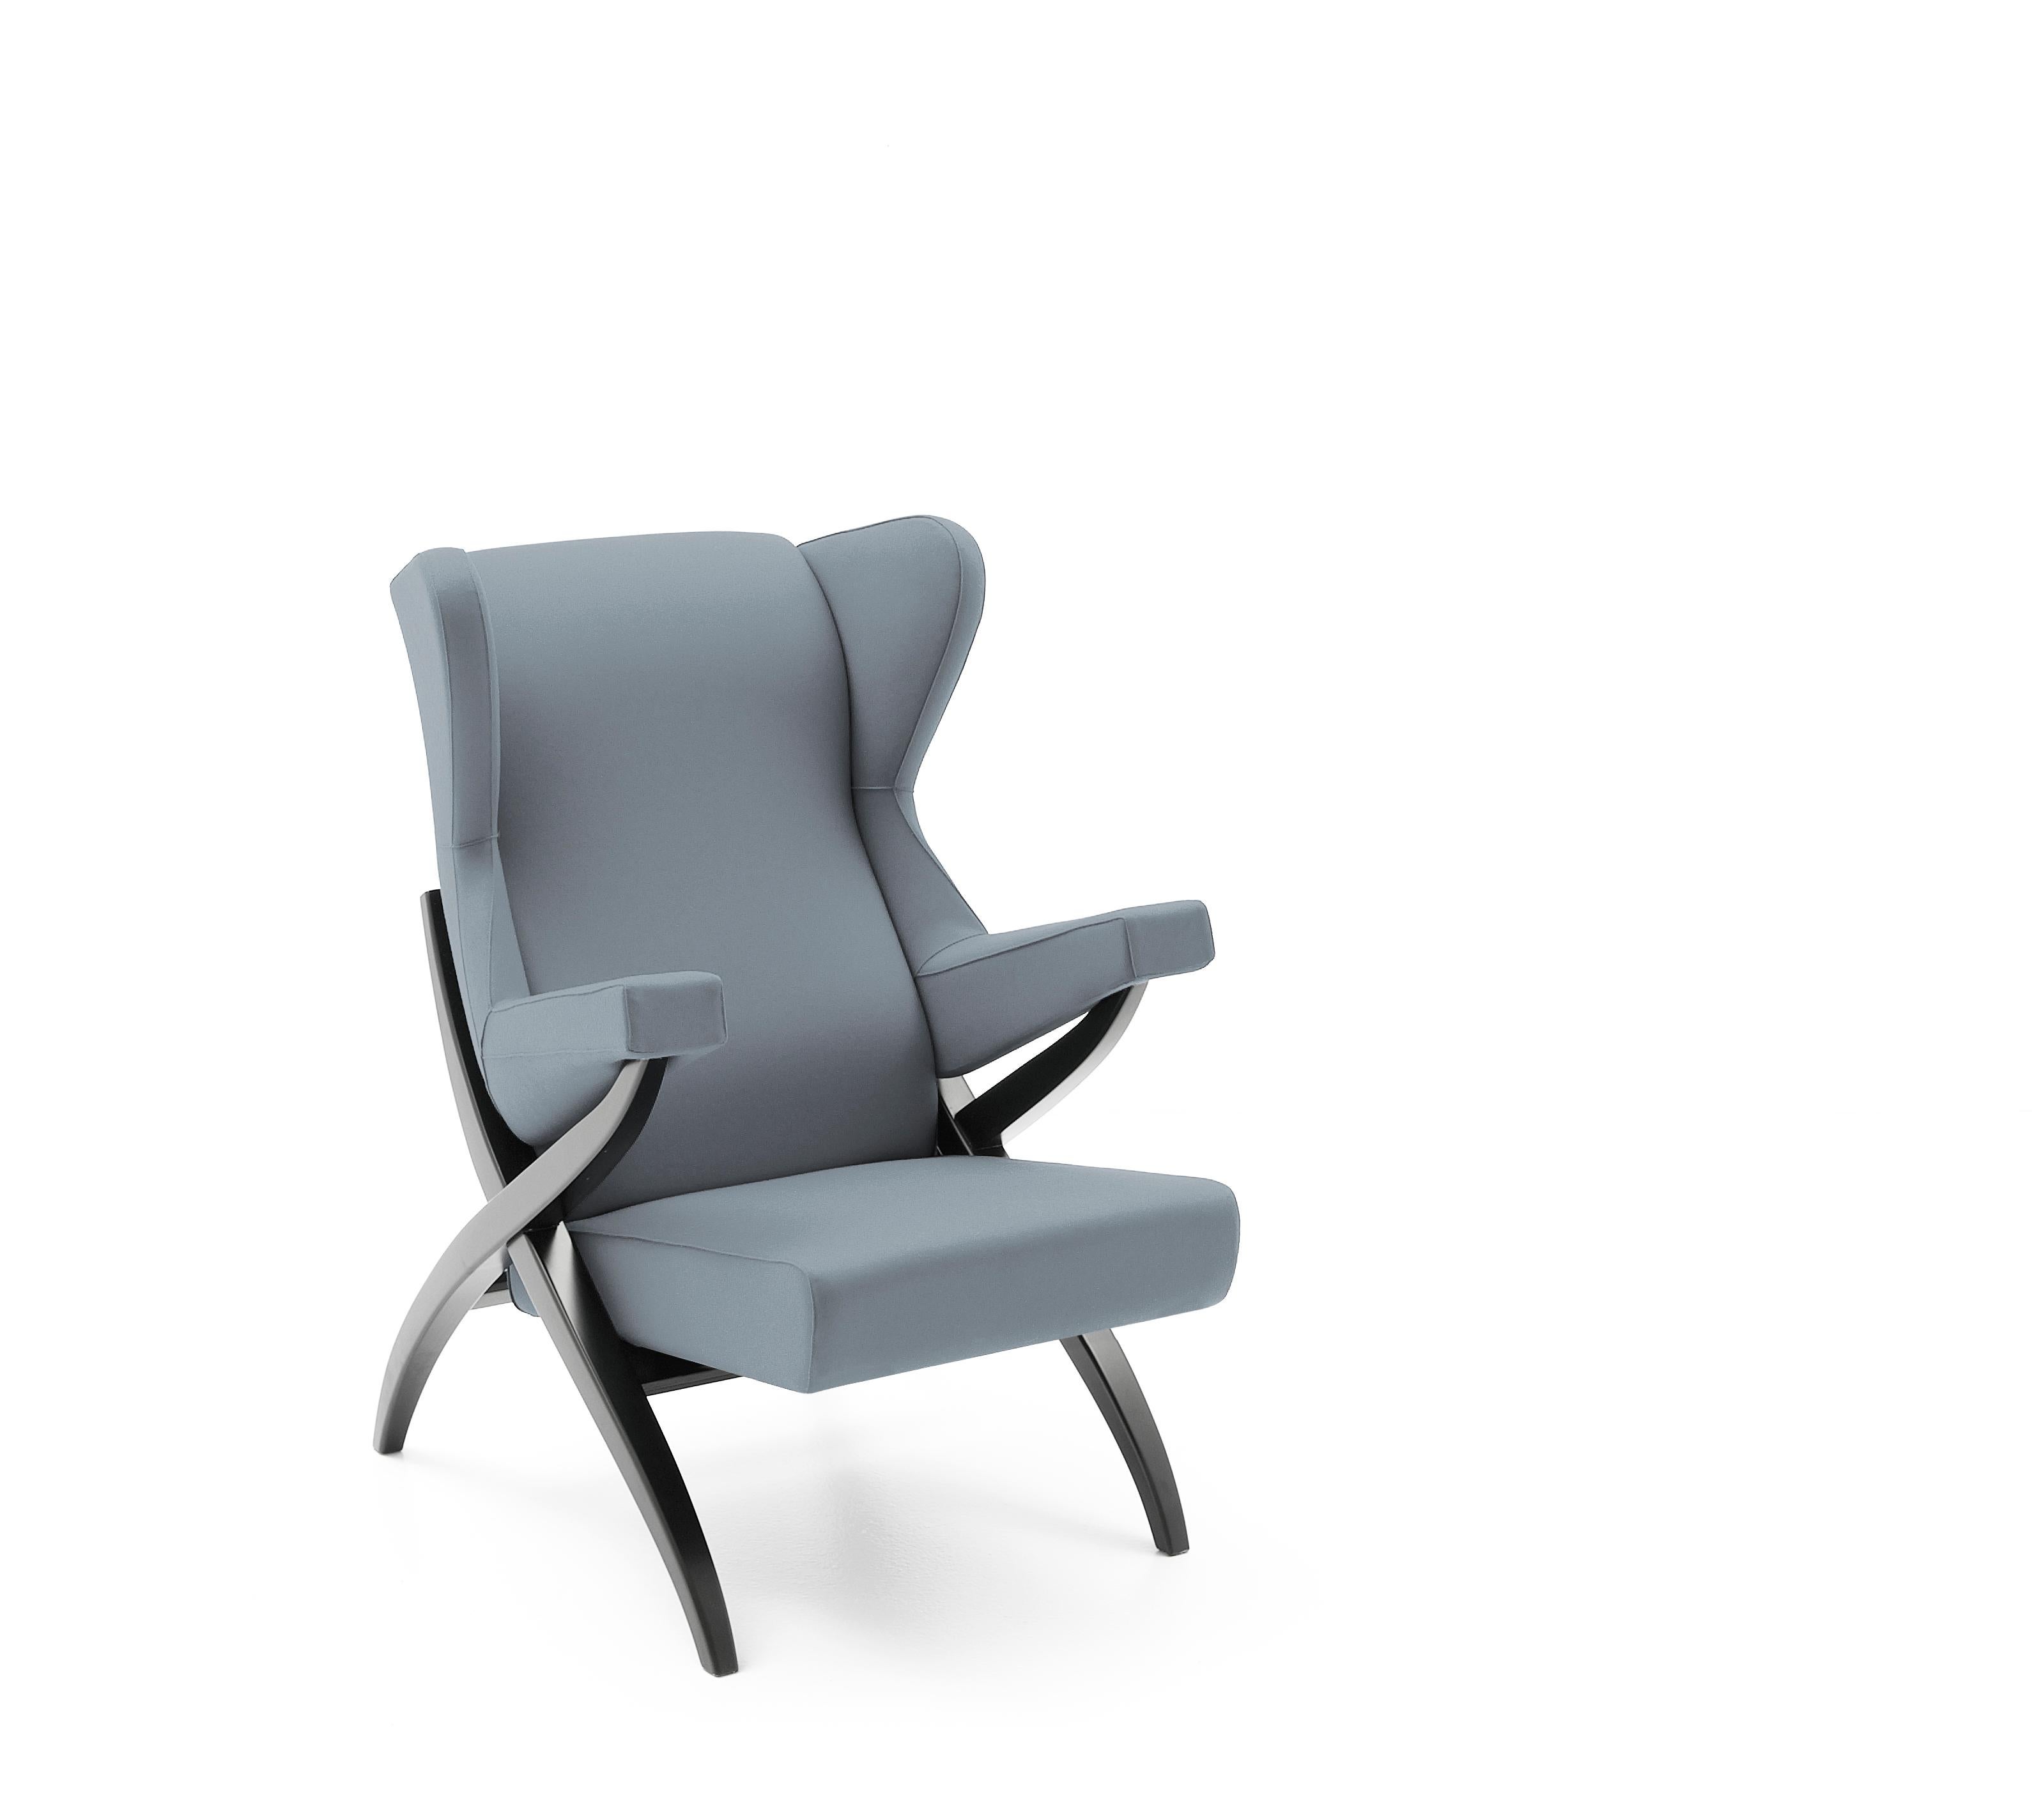 Symbole de confort, le fauteuil Fiorenza apparaît dans la publicité de Pirelli des années 1950 comme symbole du potentiel du caoutchouc mousse, considéré à l'époque comme le matériau le plus avancé technologiquement utilisé dans les meubles